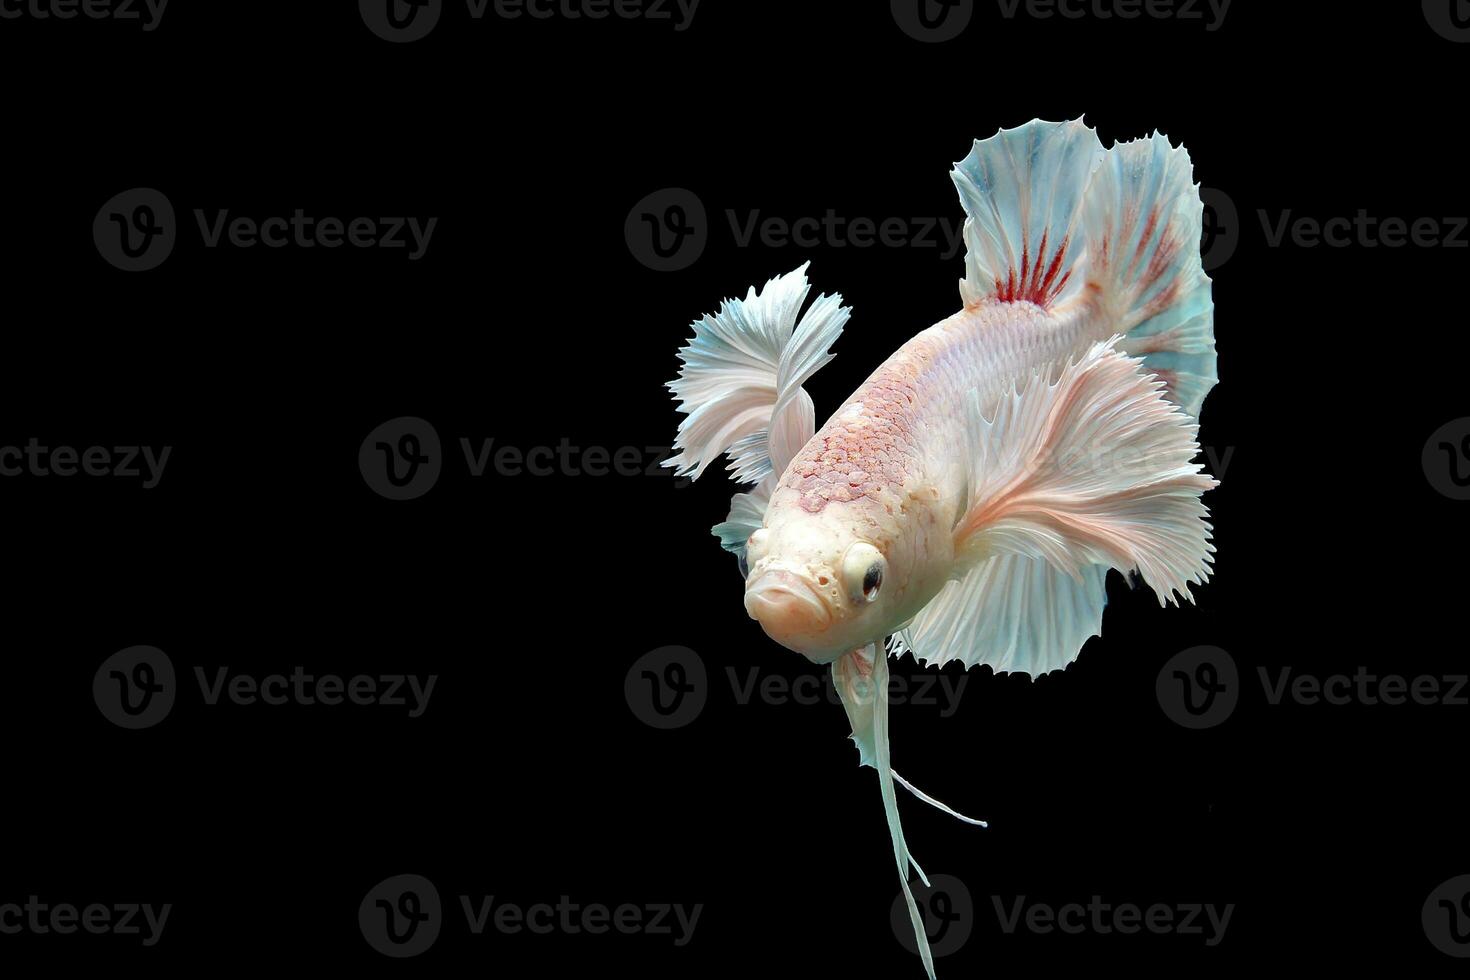 magnifique dansant de fantaisie Dumbo oreille betta poisson photo